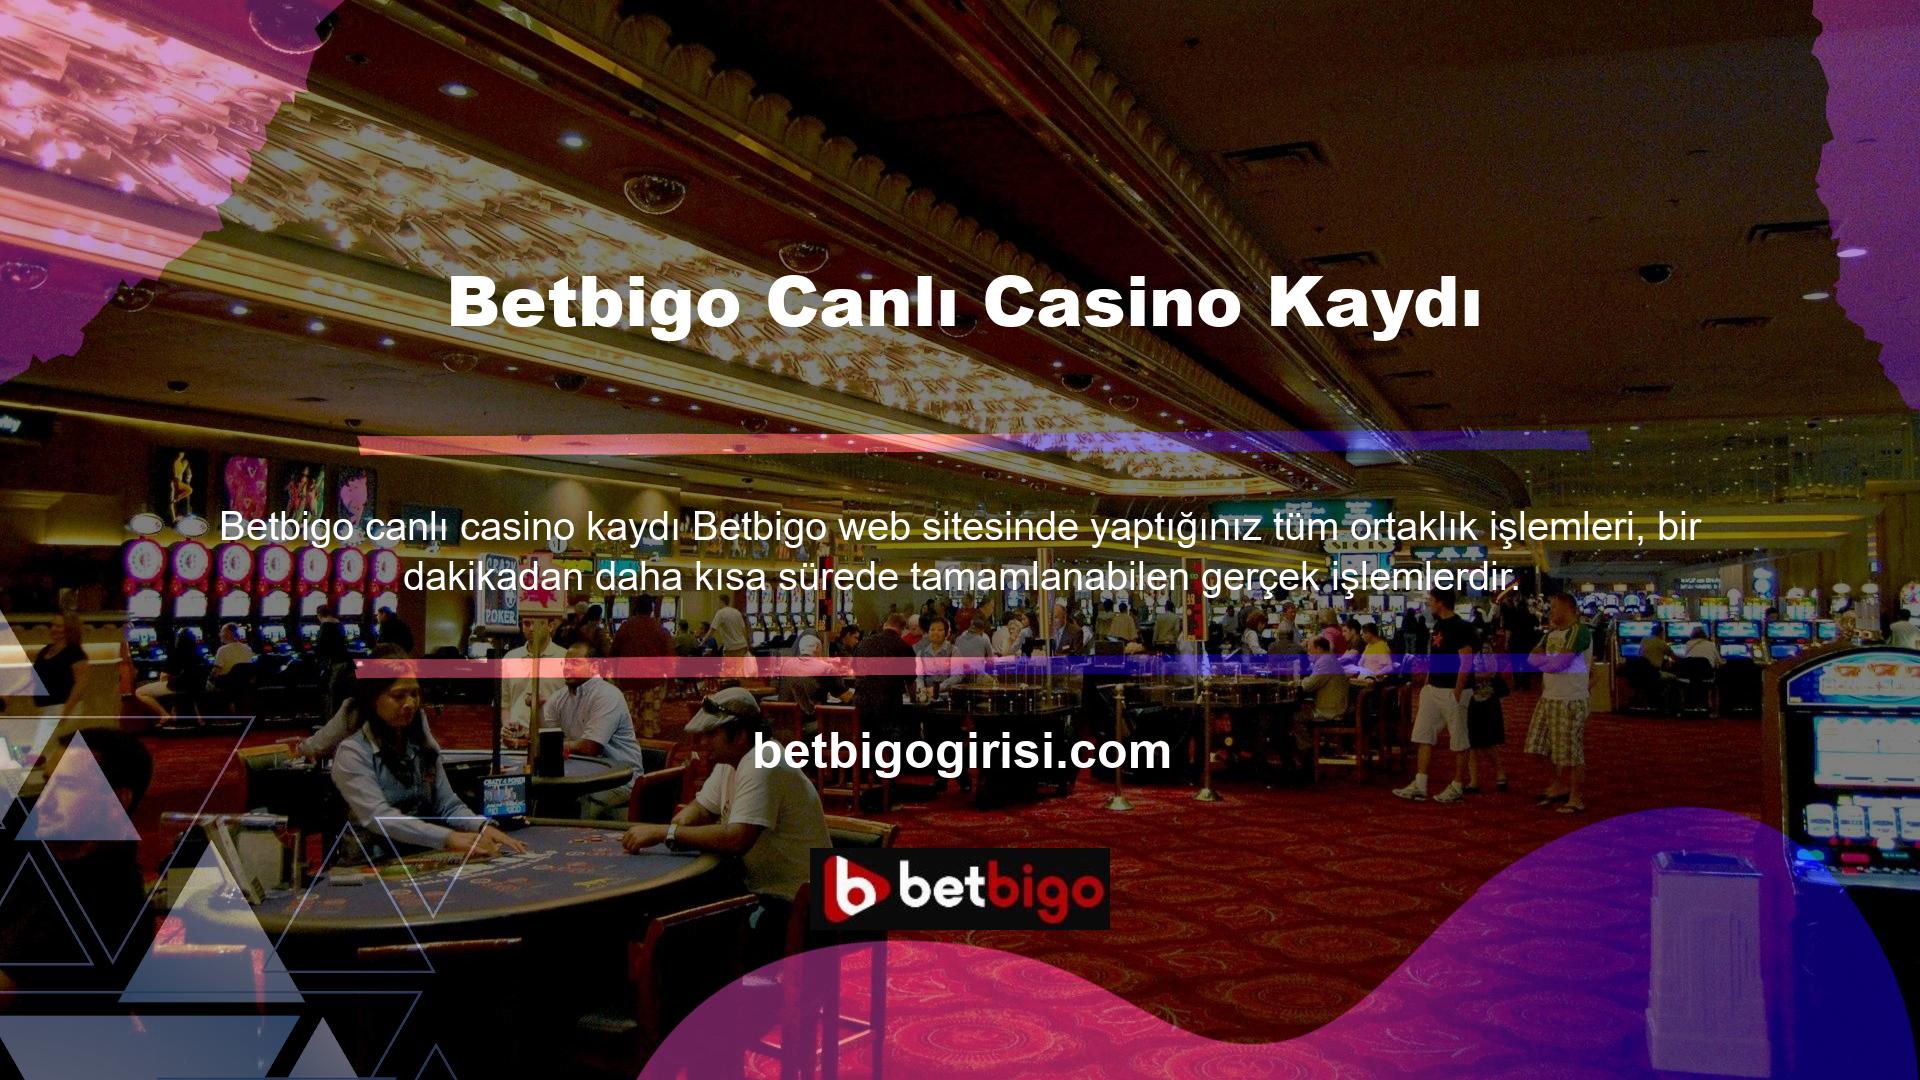 Betbigo canlı casino fırsatlarından yararlanmak isteyen kullanıcılar mevcut adreslerinden kolayca hesap açabilirler